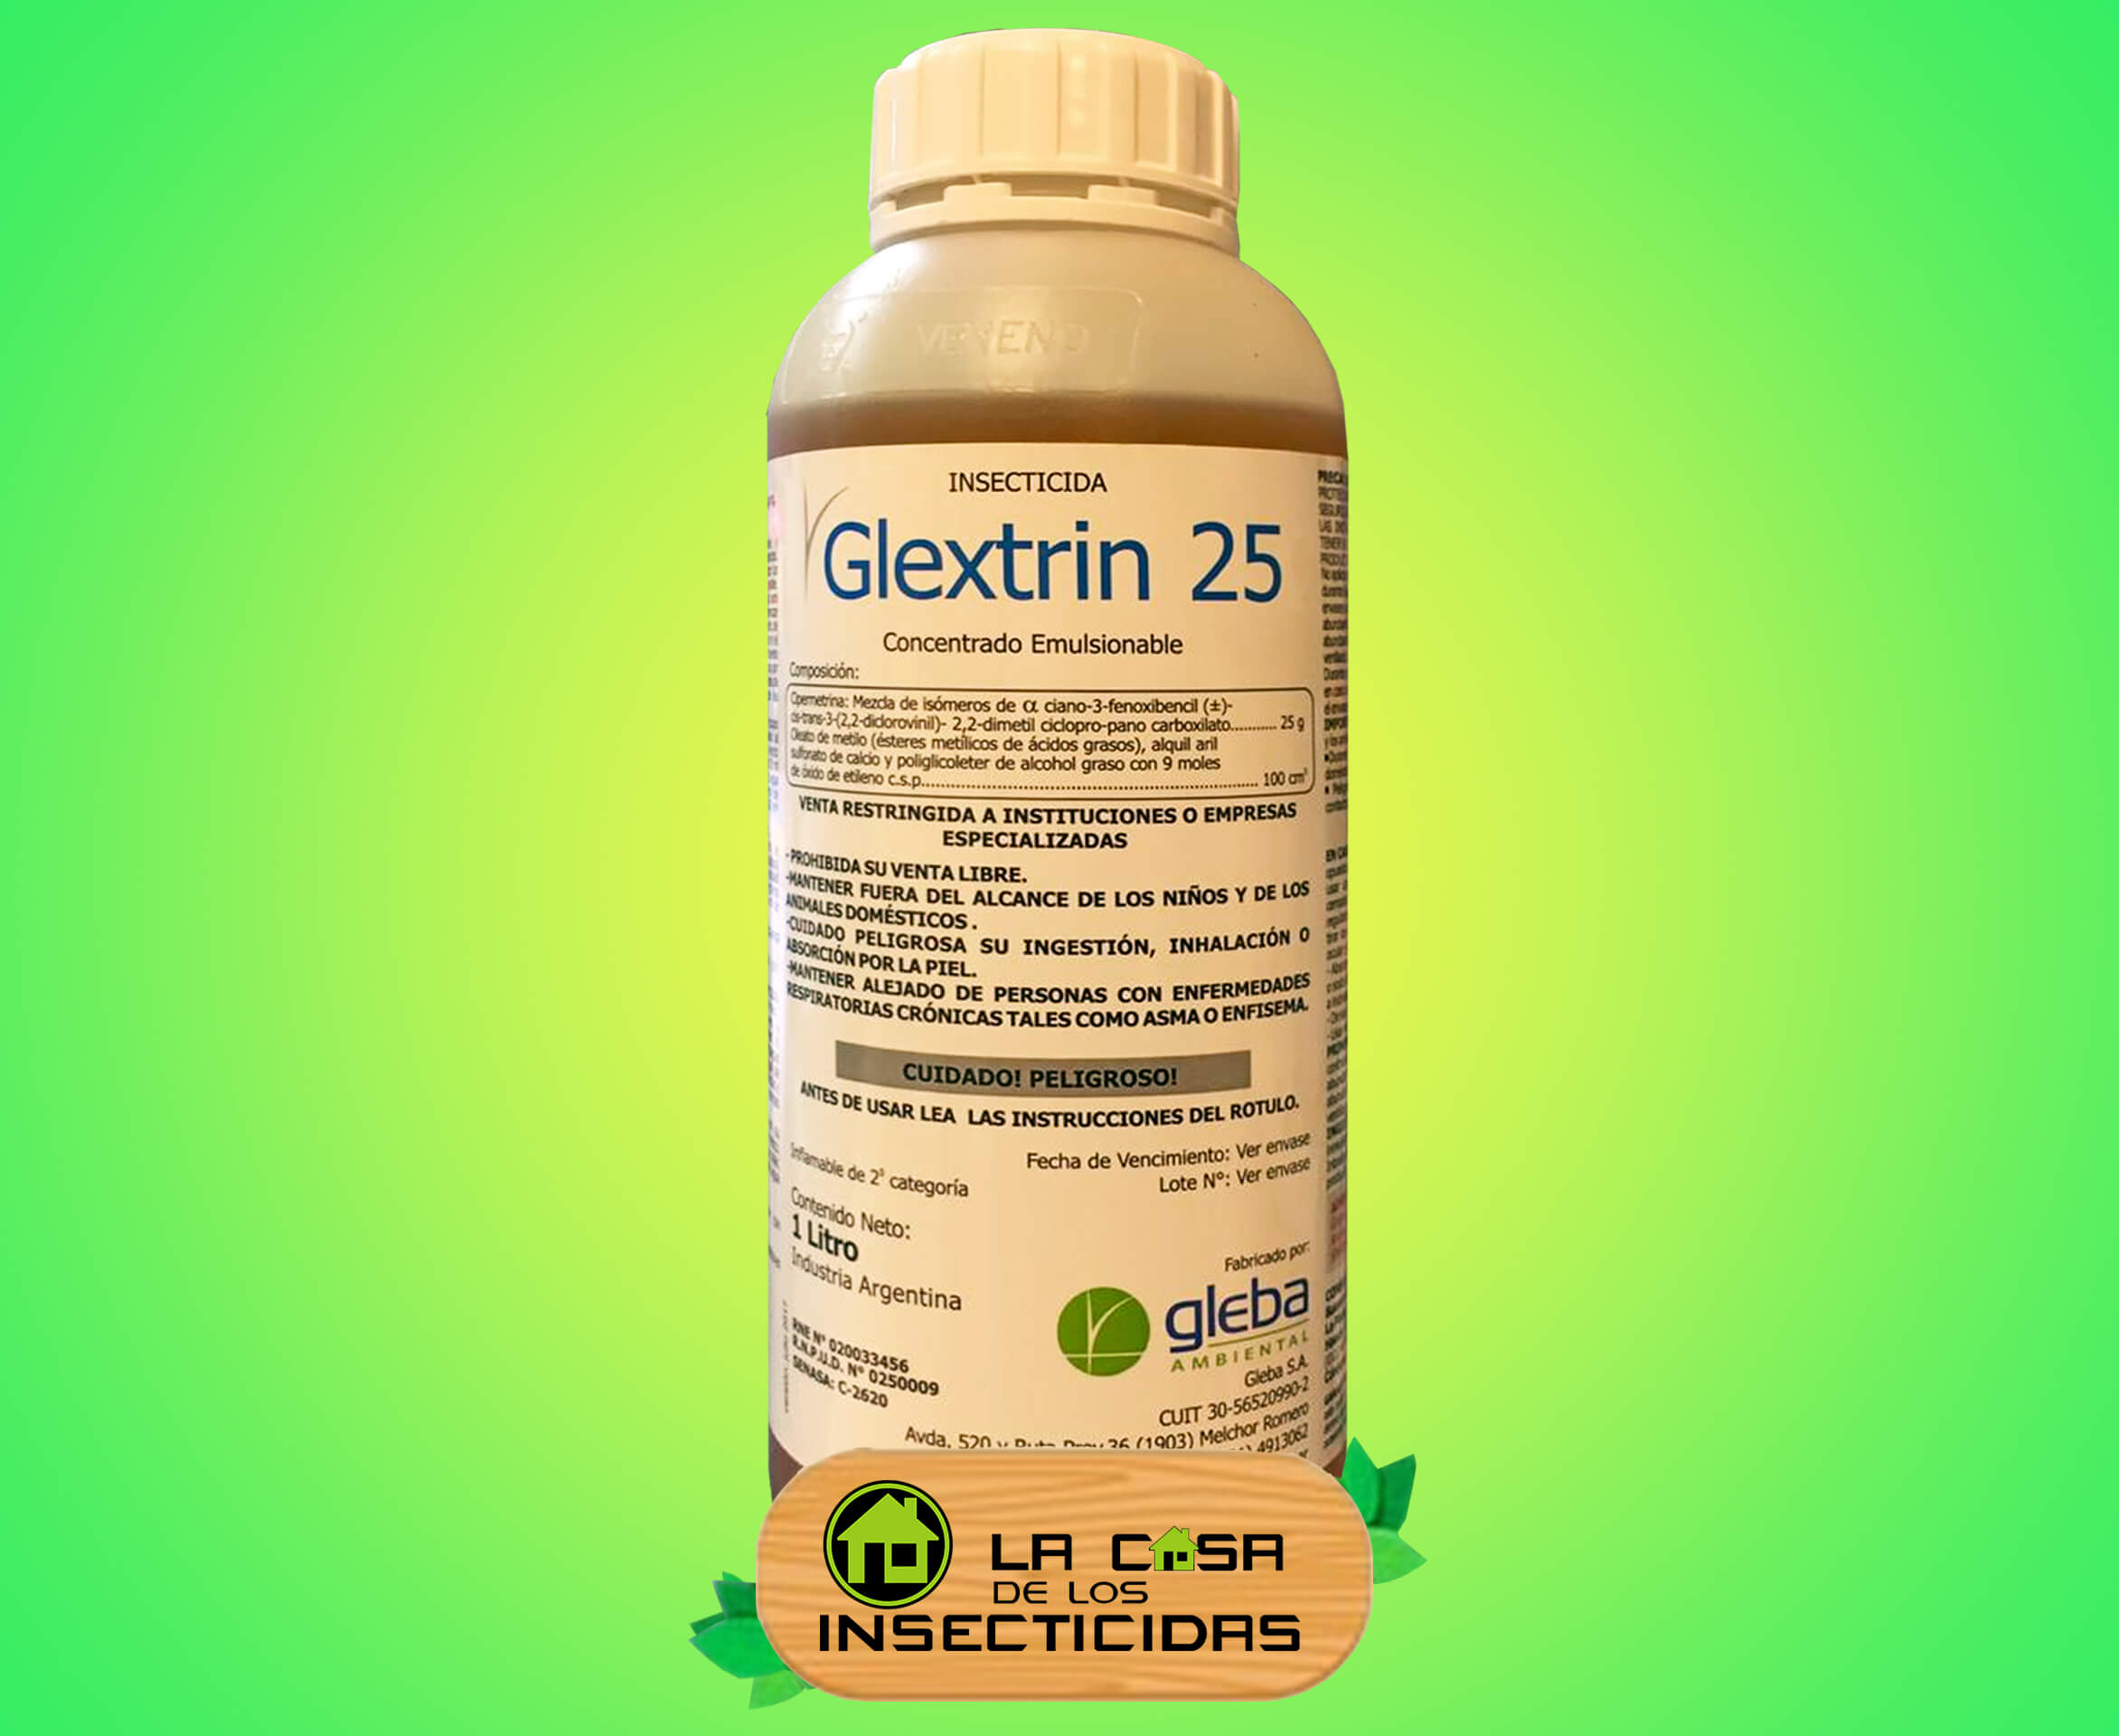 Glextrin 25 insecticida fumigación control de plagas x 1lt.